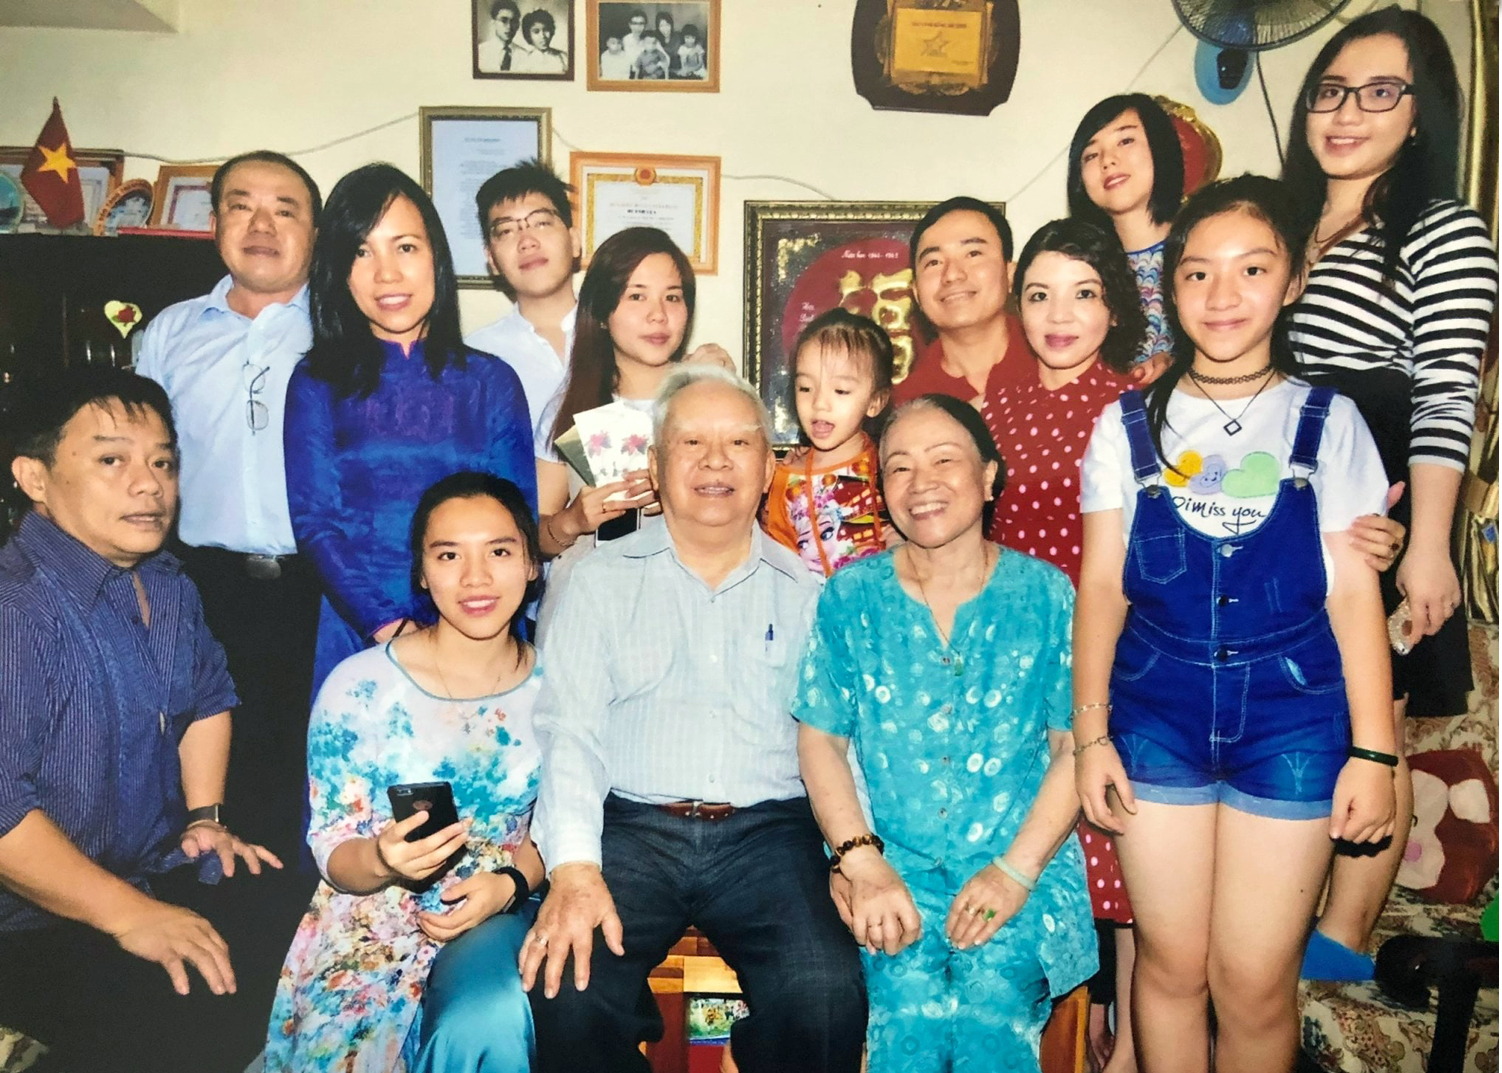 Chuyên gia tâm lý Hồ Thị Tuyết Mai cùng ông xã - phó giáo sư, tiến sĩ sử học Huỳnh Lứa - trong niềm vui quây quần cùng con cháu